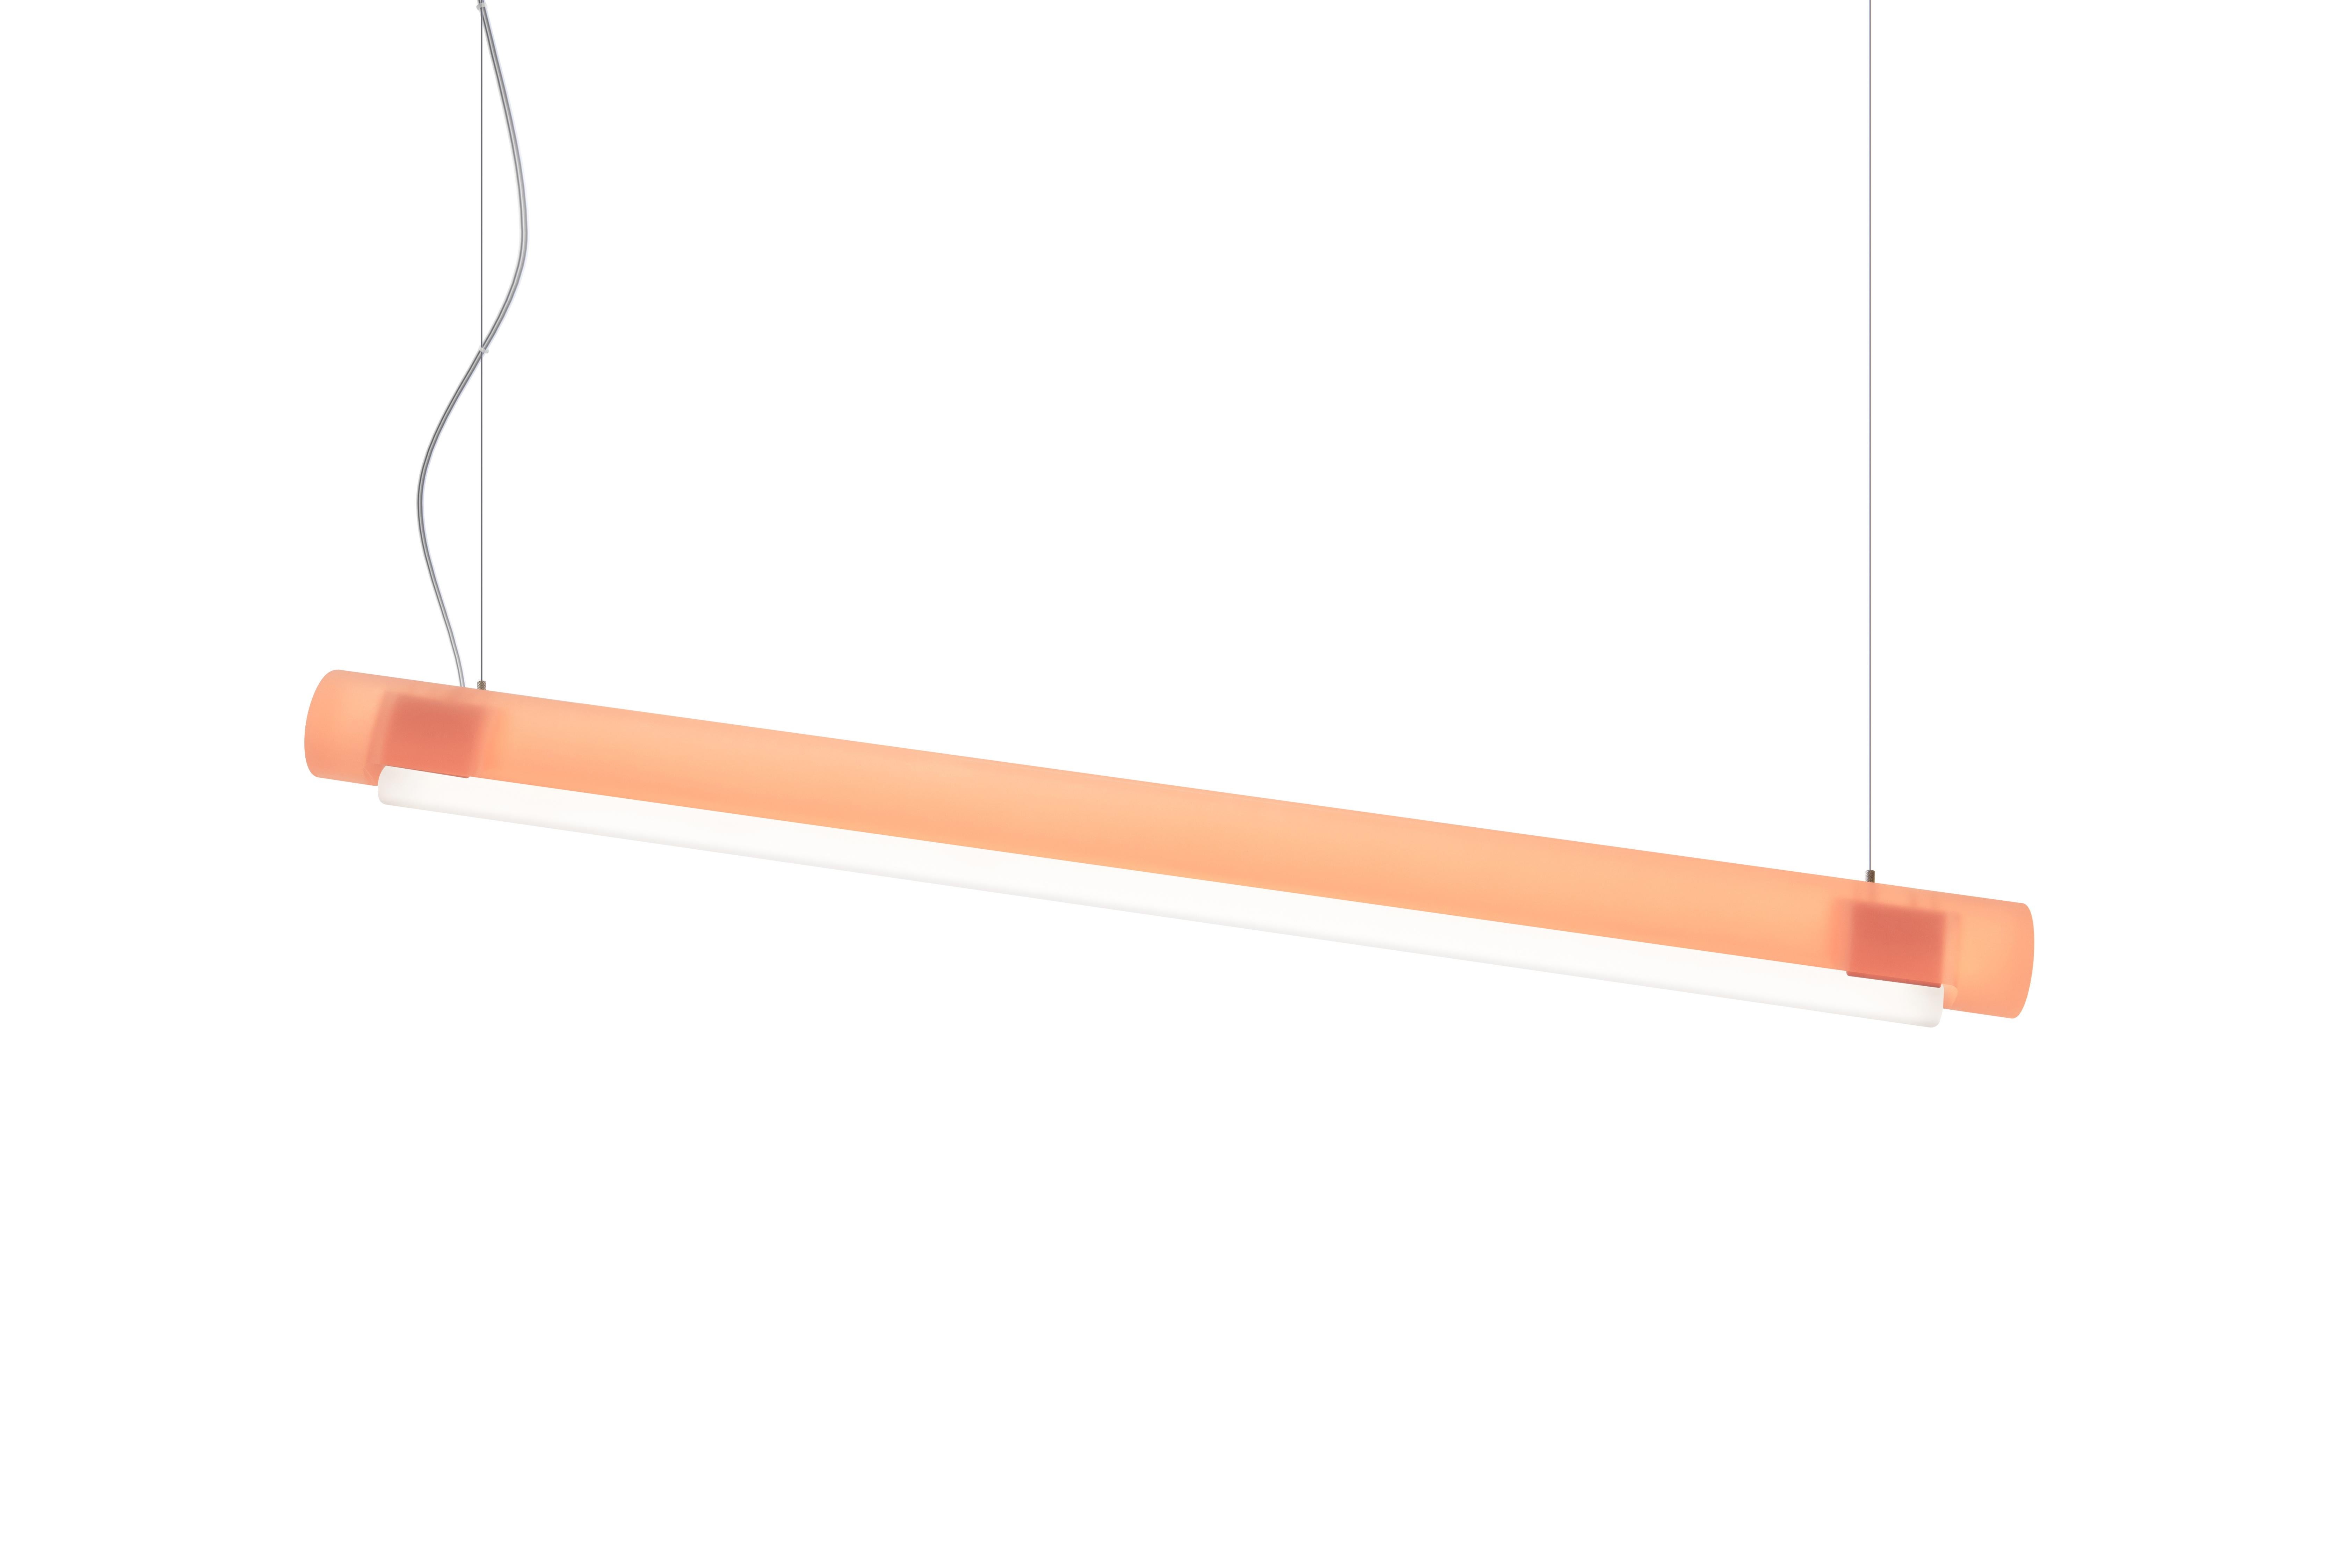 Exploitant le savoir-faire de Marcelis en matière de couleurs, la barre cylindrique suspendue de l'Aura Light peut être utilisée seule ou faire partie d'un ensemble. D'une longueur de plus d'un mètre, le dessin est réalisé en résine bio-époxy, créée